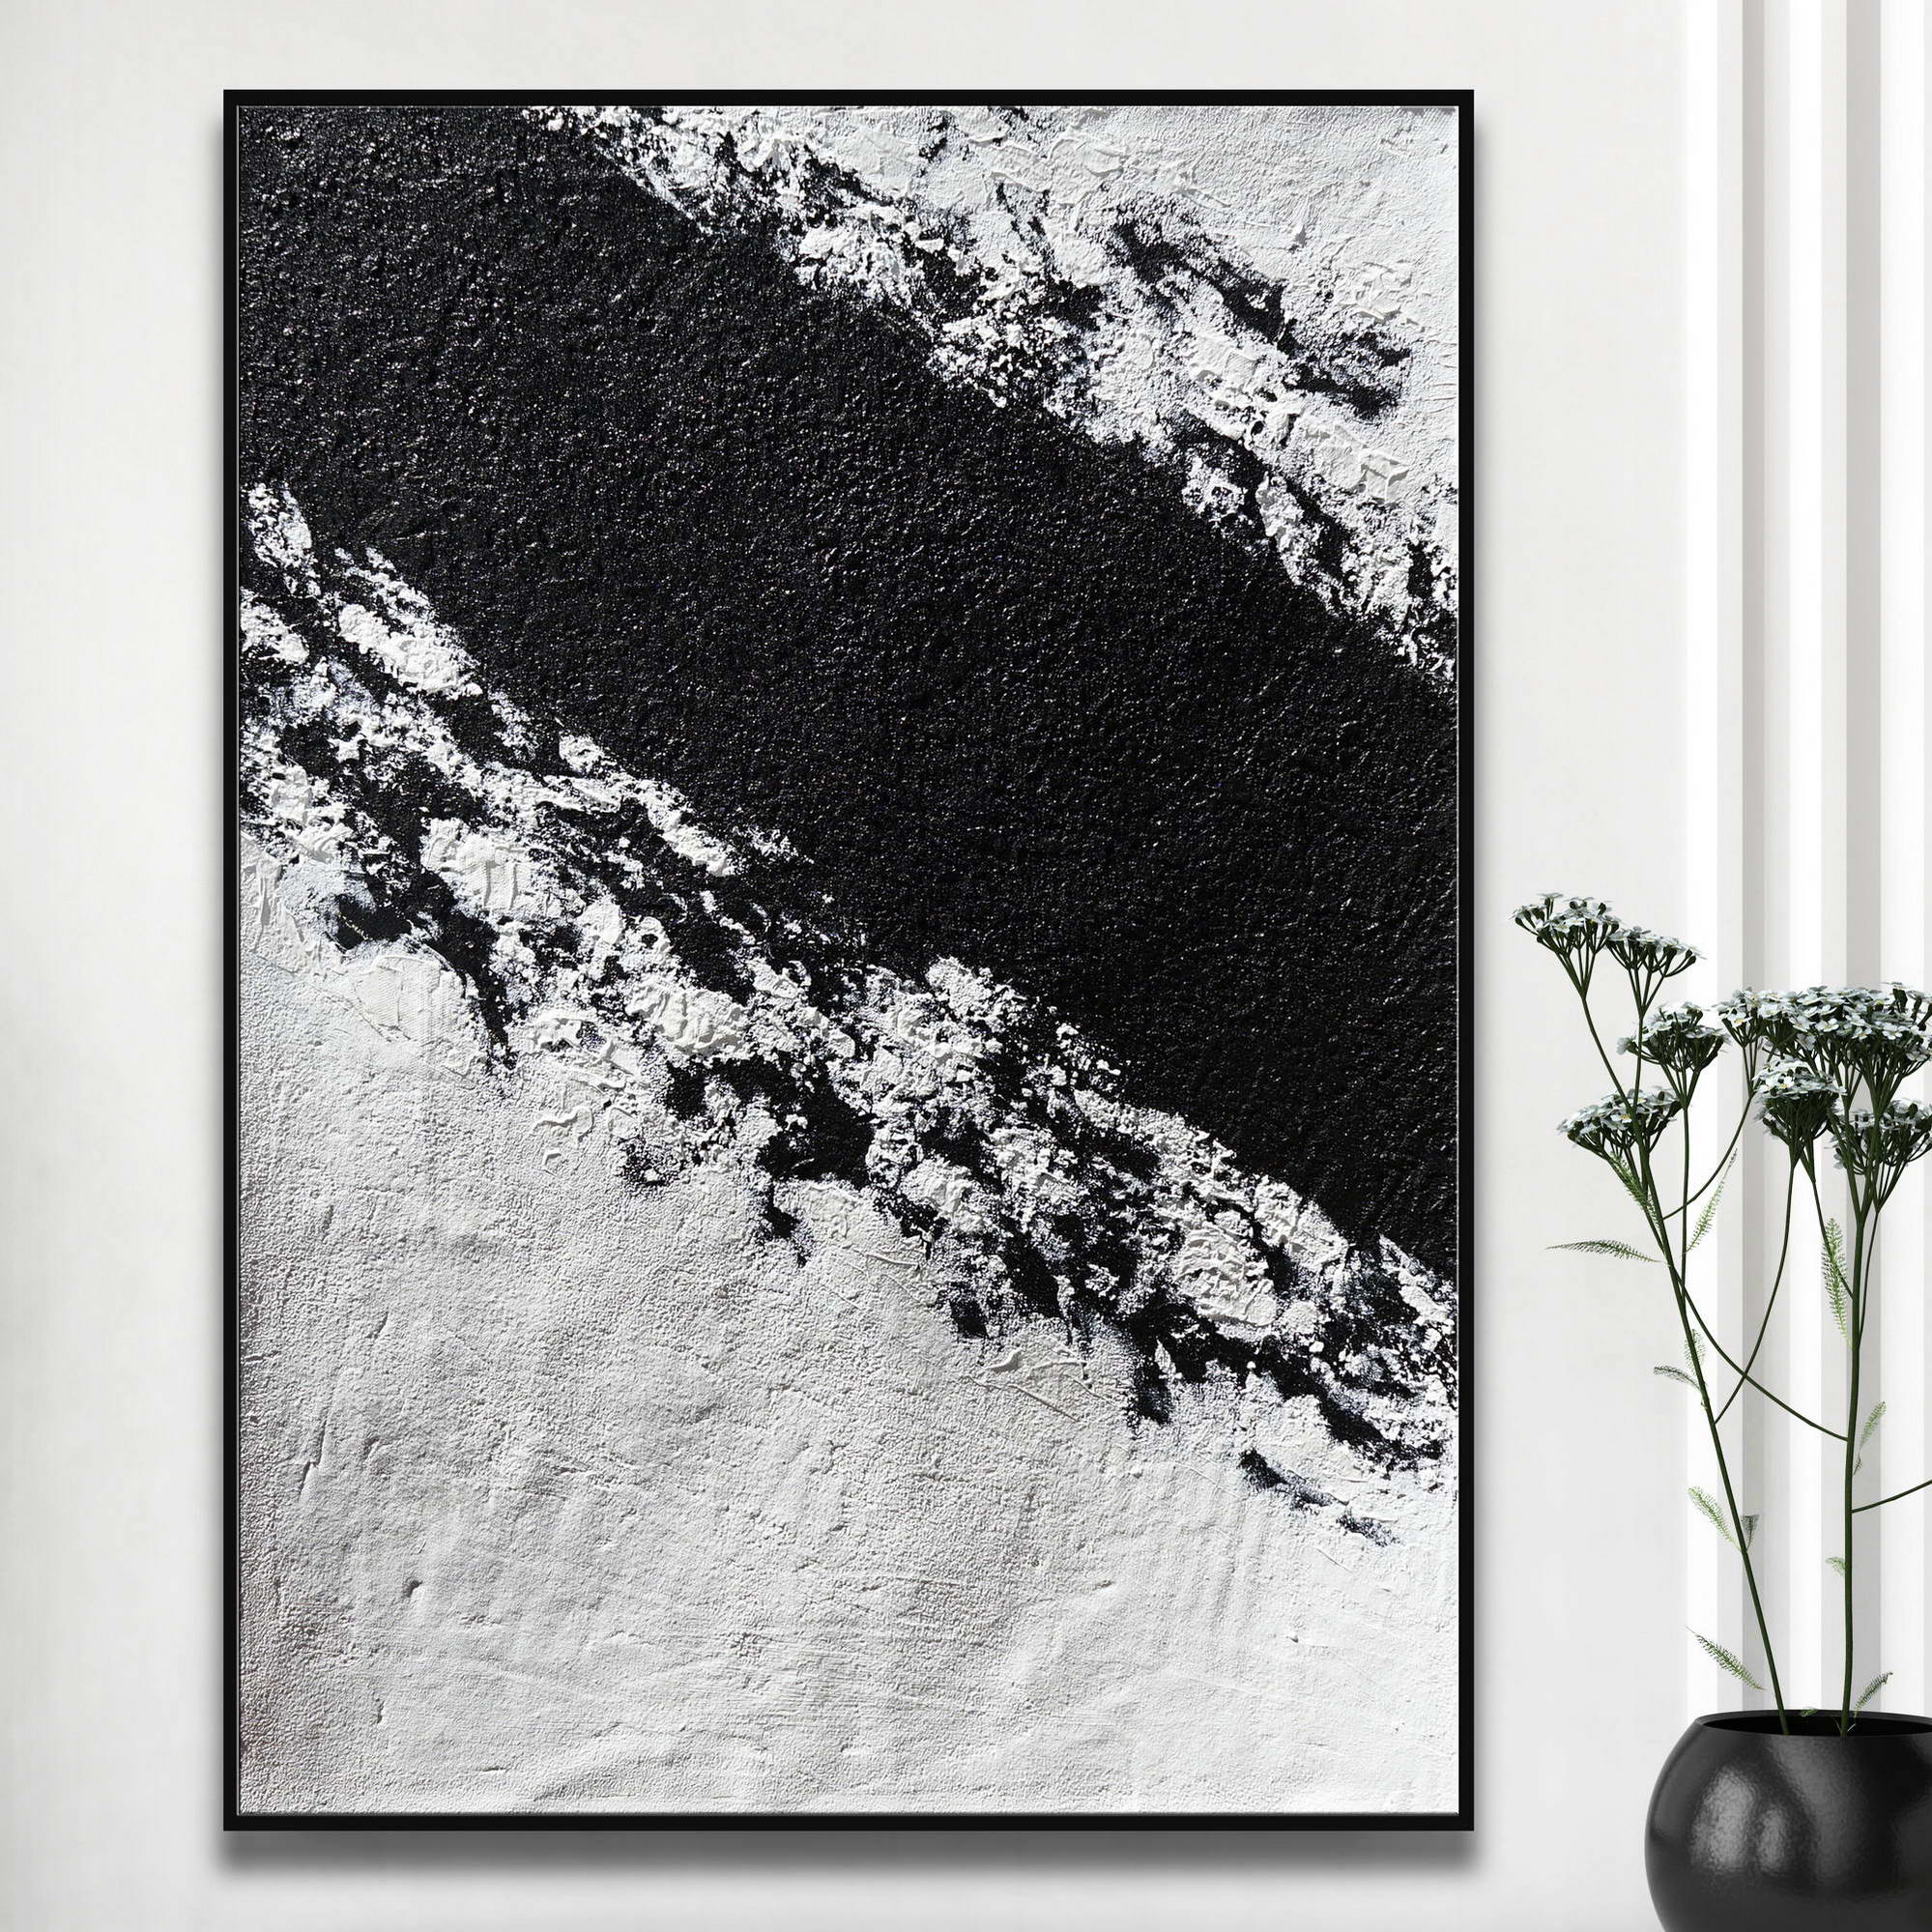 Quadro astratto in bianco e nero con texture che ricorda un monte innevato